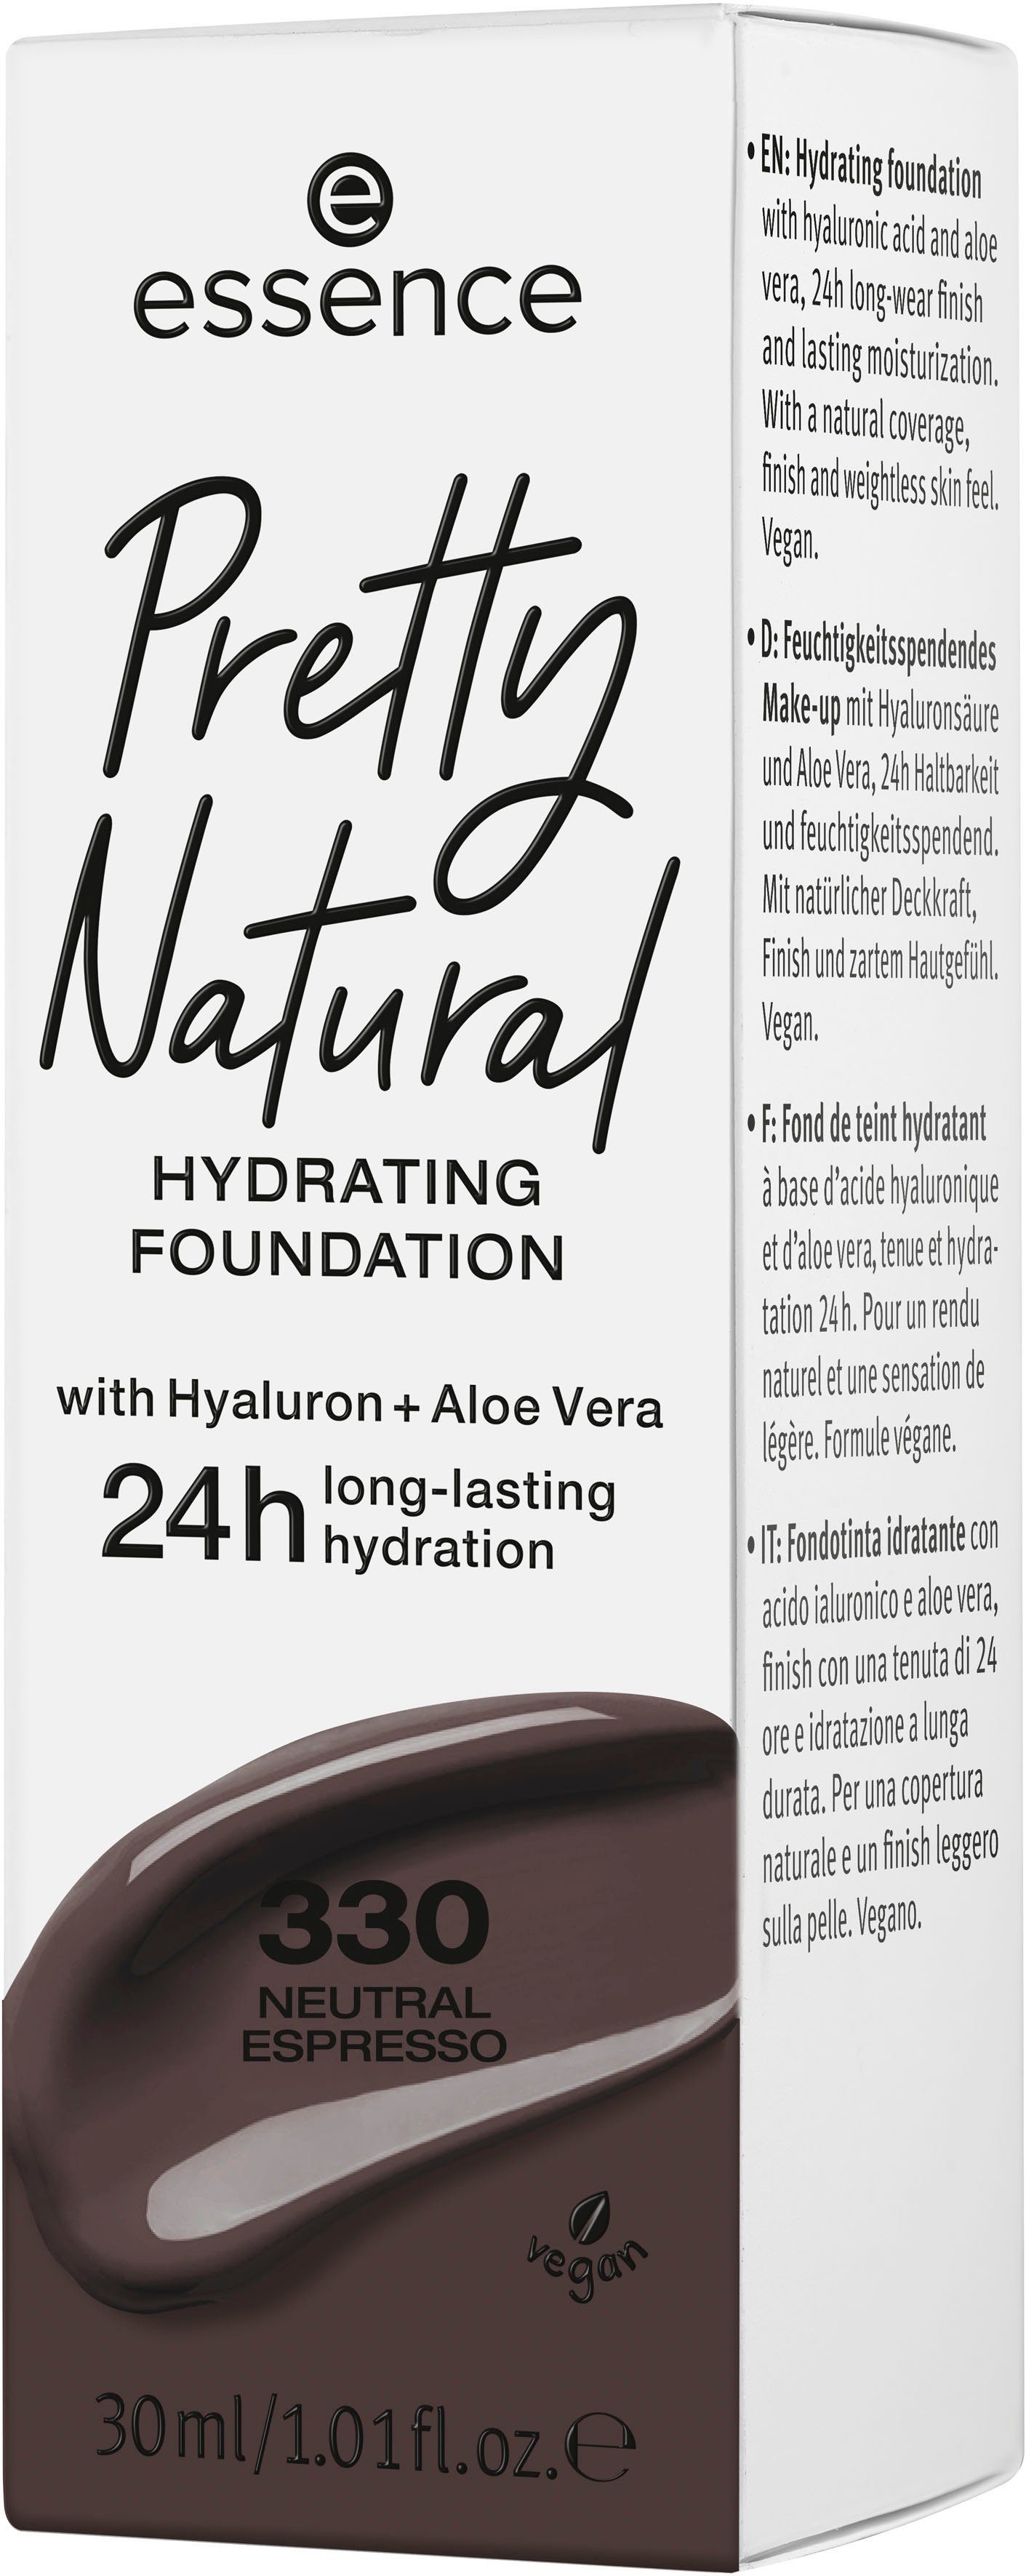 Neutral Espresso Pretty Essence Natural 3-tlg. HYDRATING, Foundation